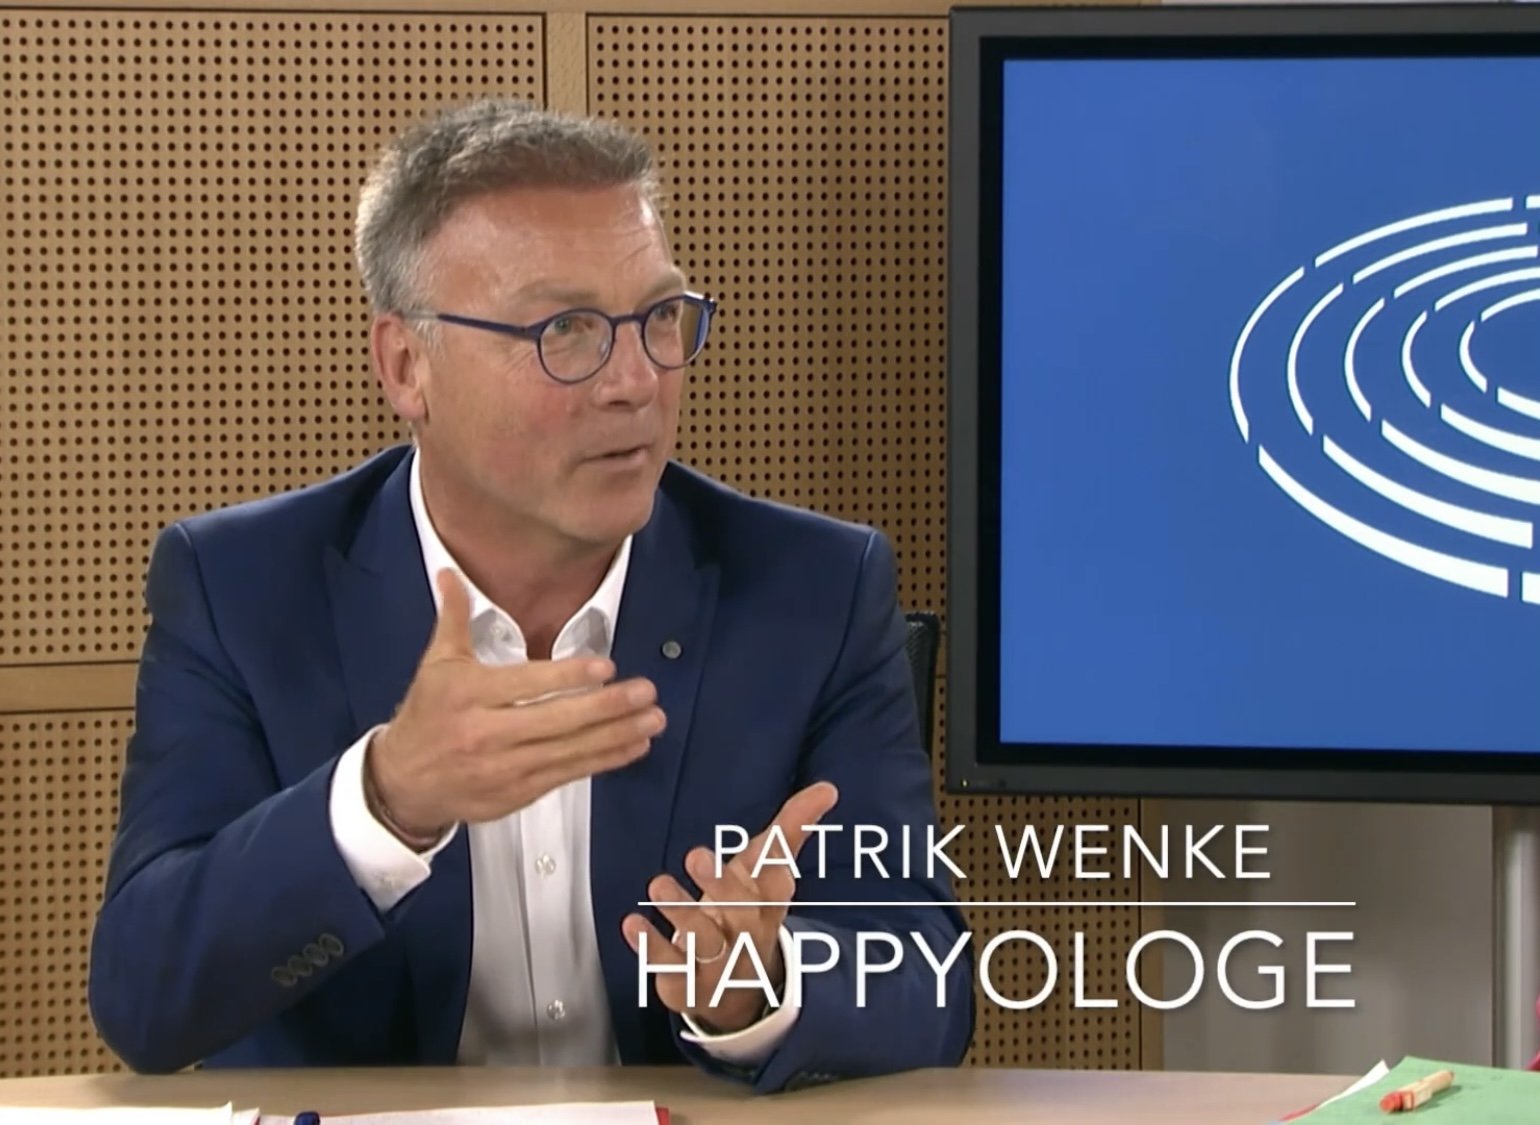 Happyologe Patrik Wenke